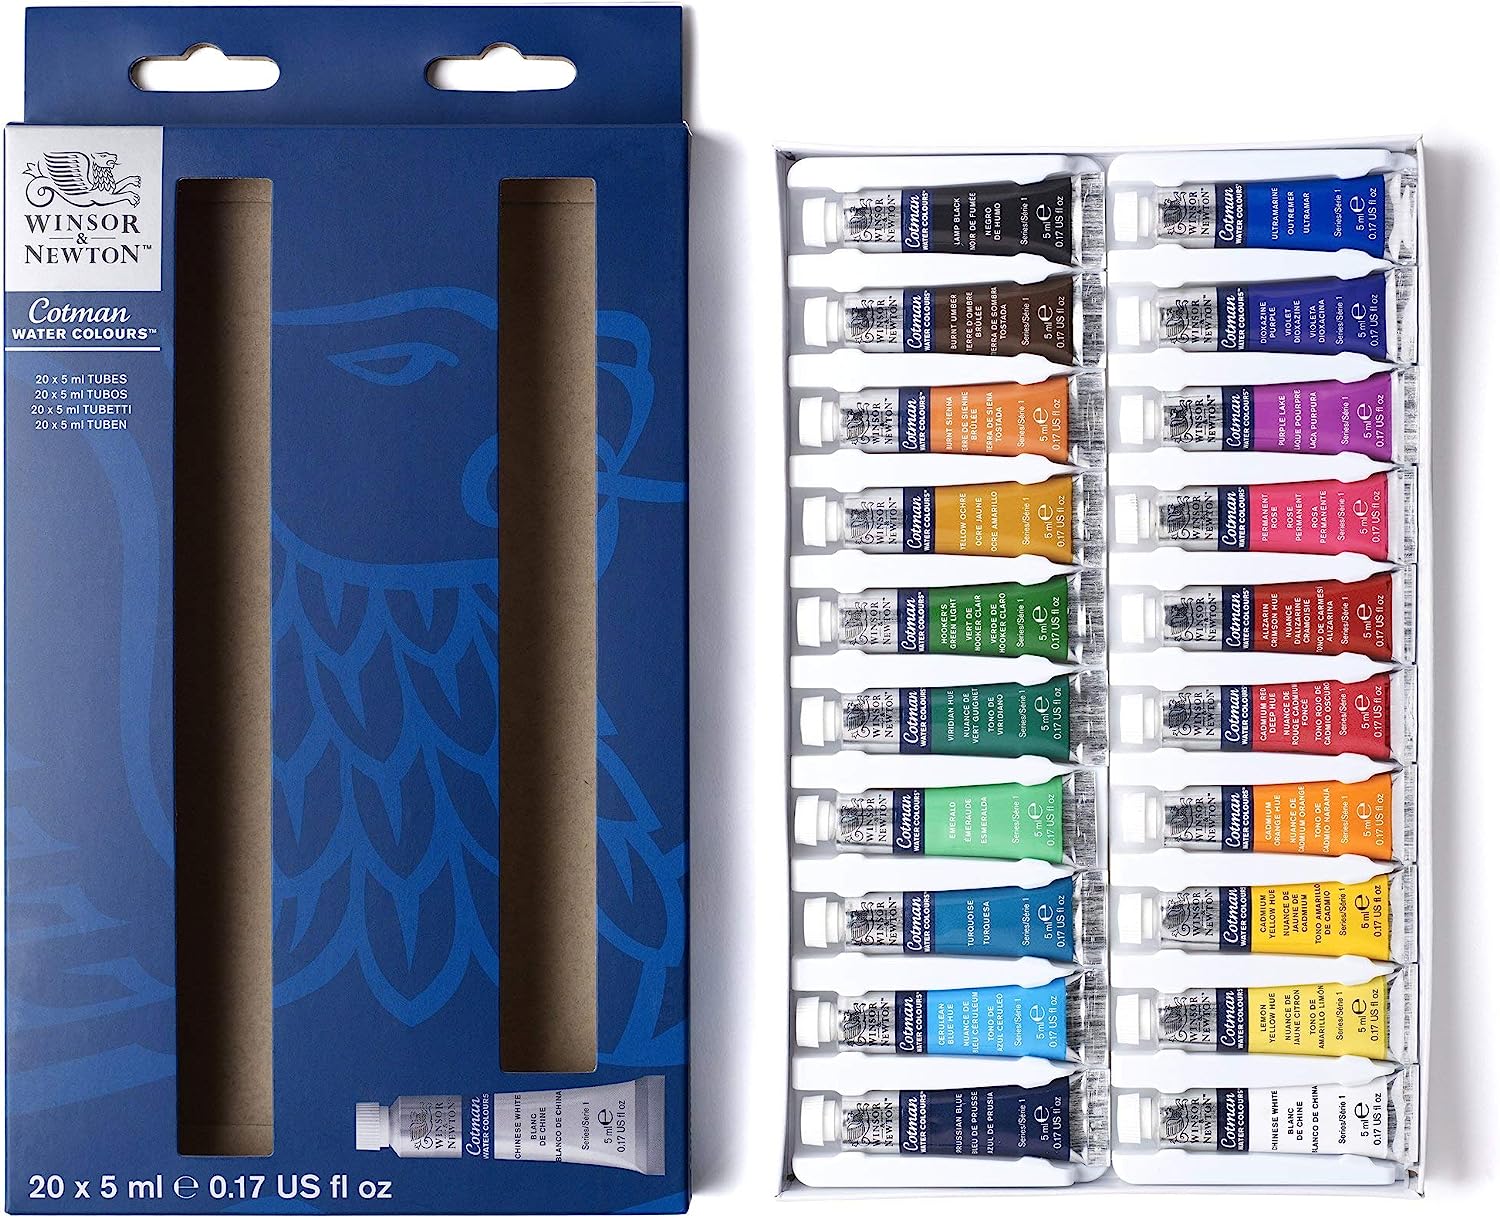 watercolor paints for professionals product comparison